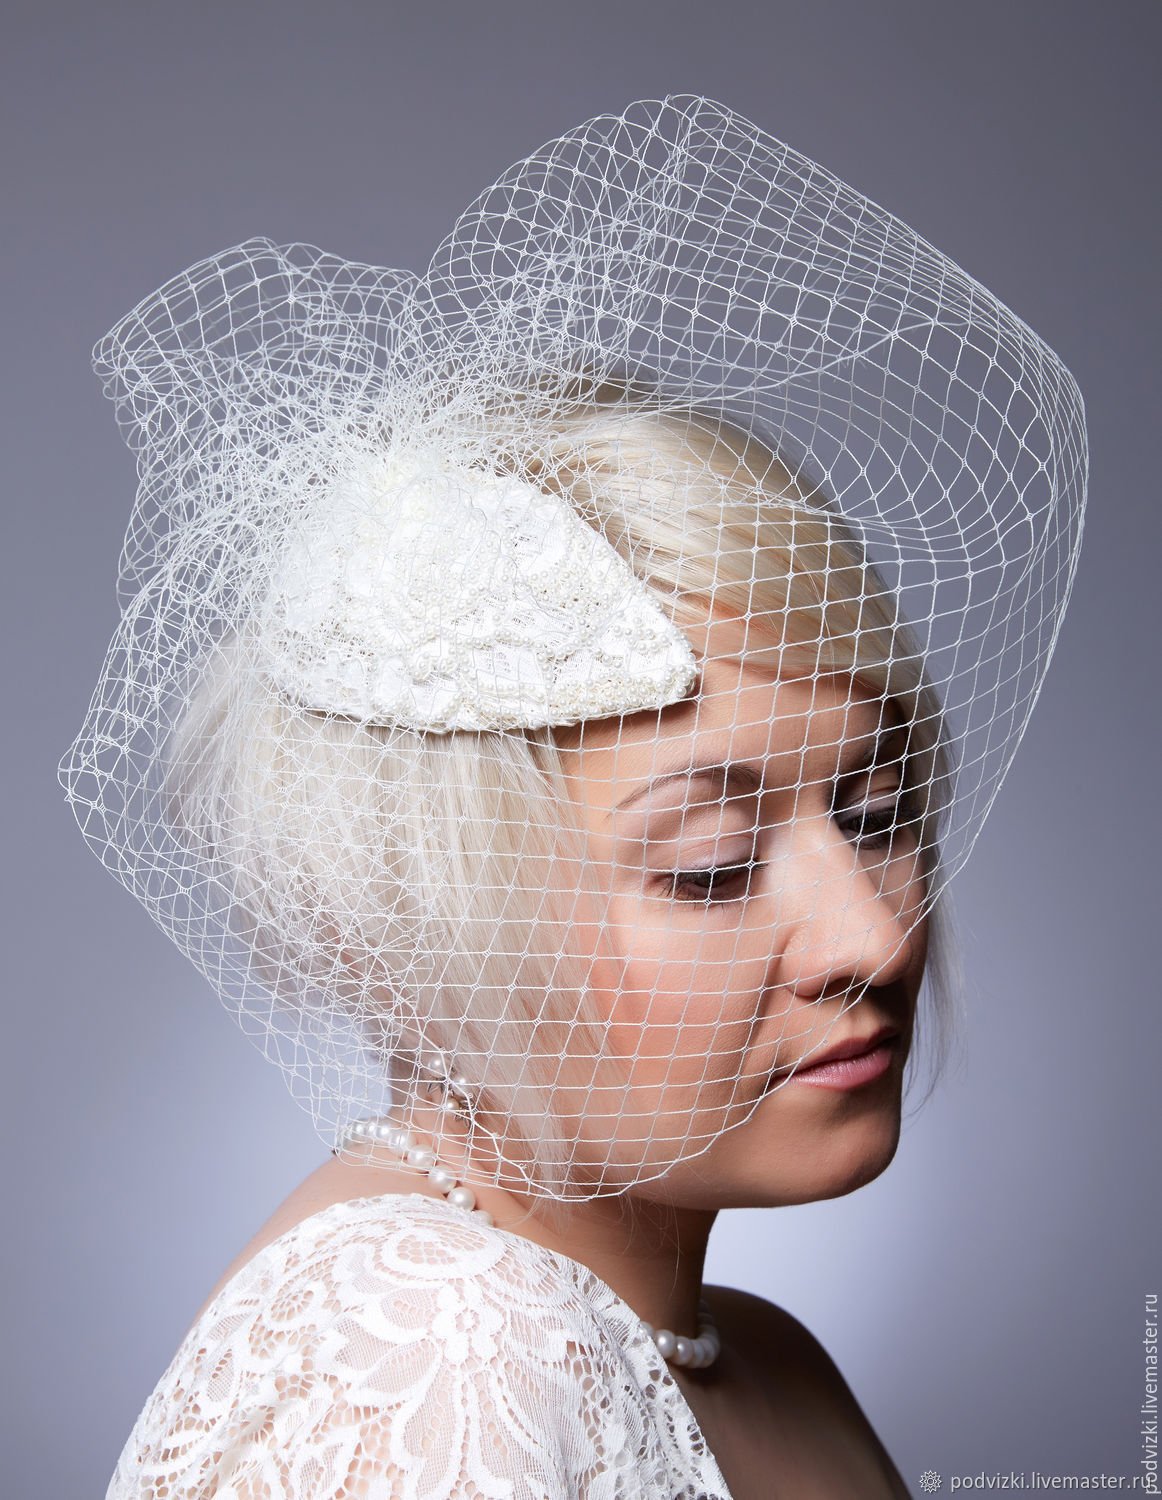 Шляпка на свадьбе: как её выбрать и правильно носить